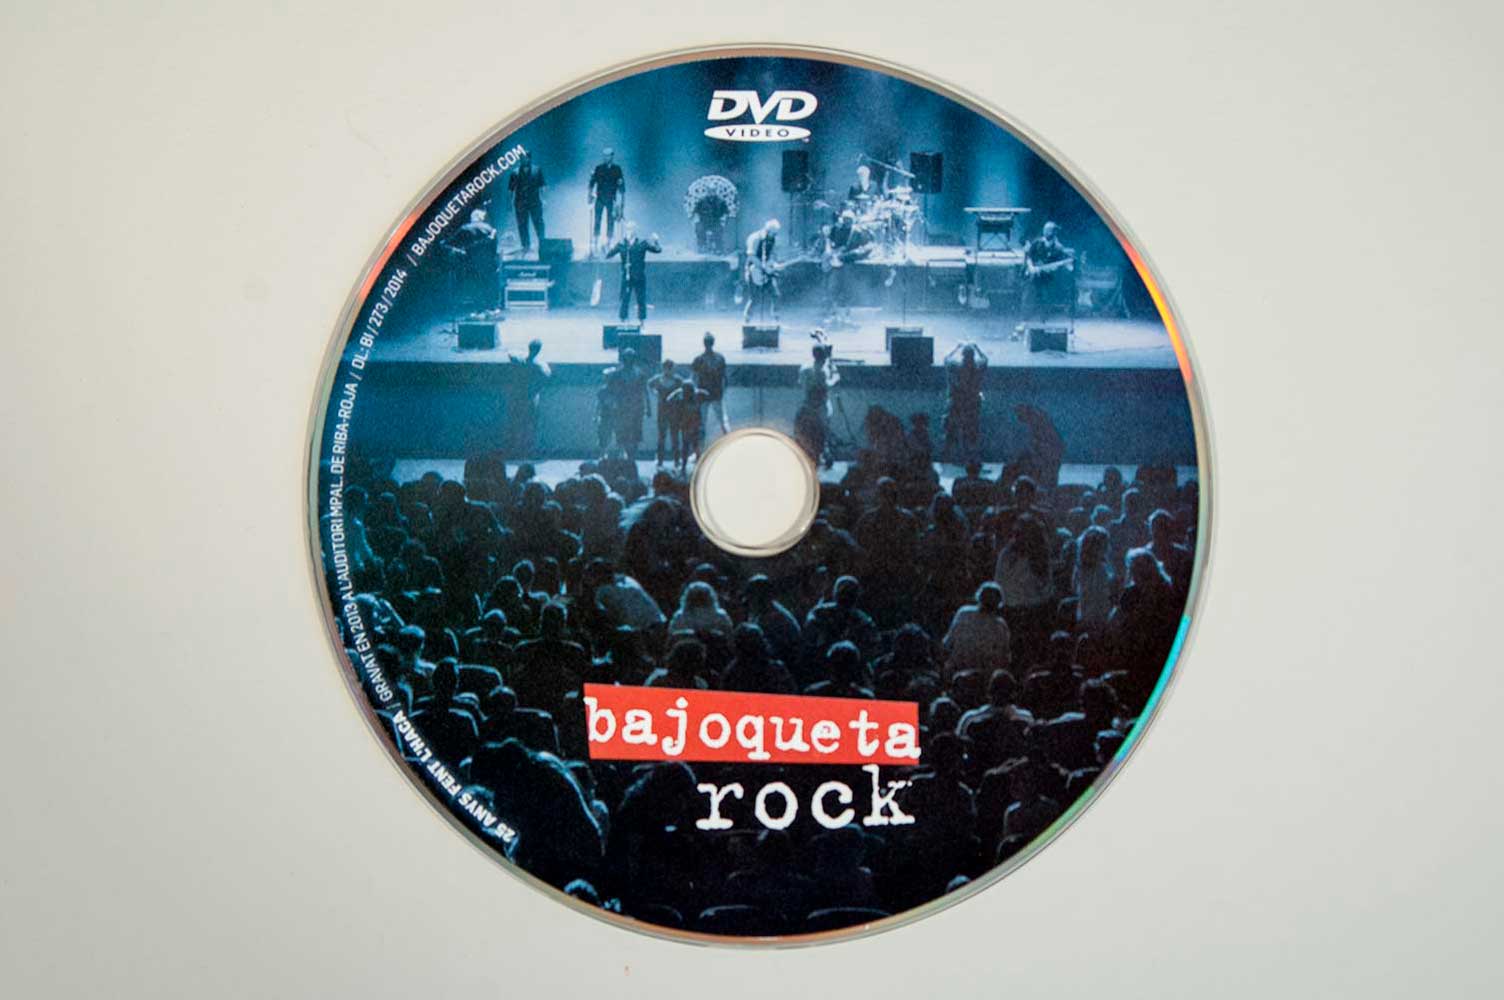 Galleta CD - DVD Bajoqueta rock 25 aniversari